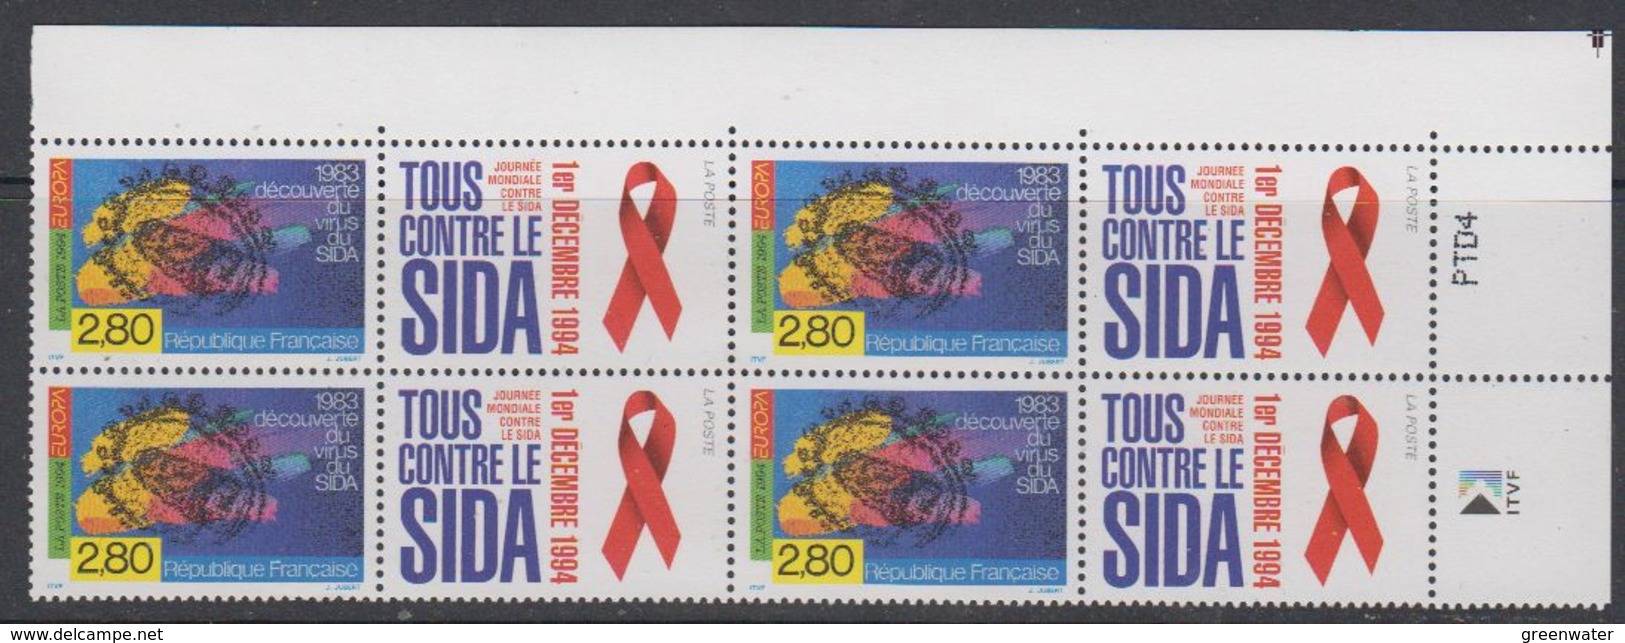 Europa Cept 1994 France 1v + Label Sida/Aids Bl Of 4 (corner) ** Mnh (45773C) - 1994